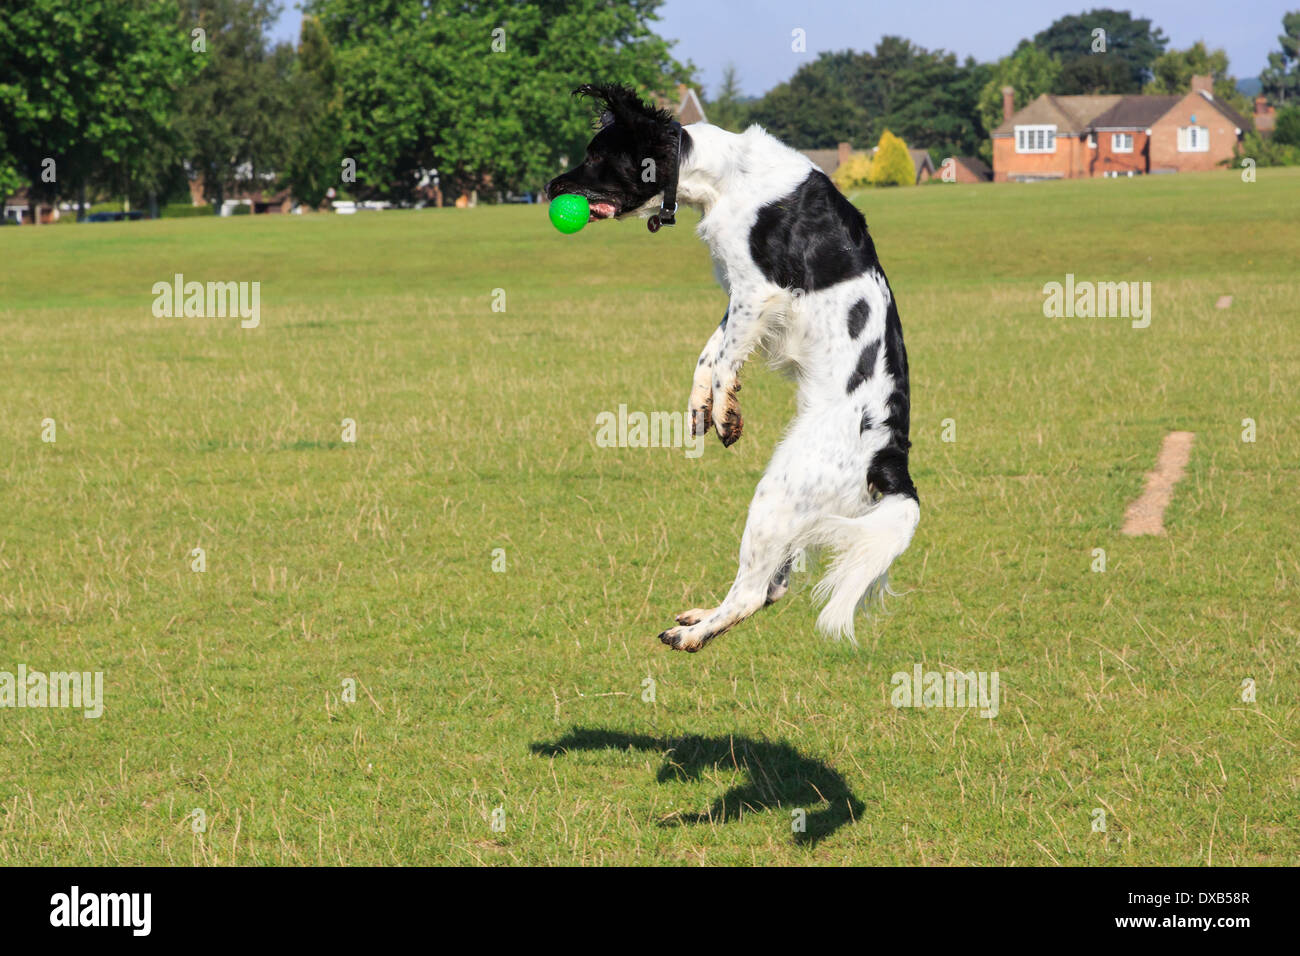 Bianco e Nero English Springer Spaniel cane il salto in aria per la cattura di una sfera nel parco. Inghilterra, Regno Unito, Gran Bretagna Foto Stock